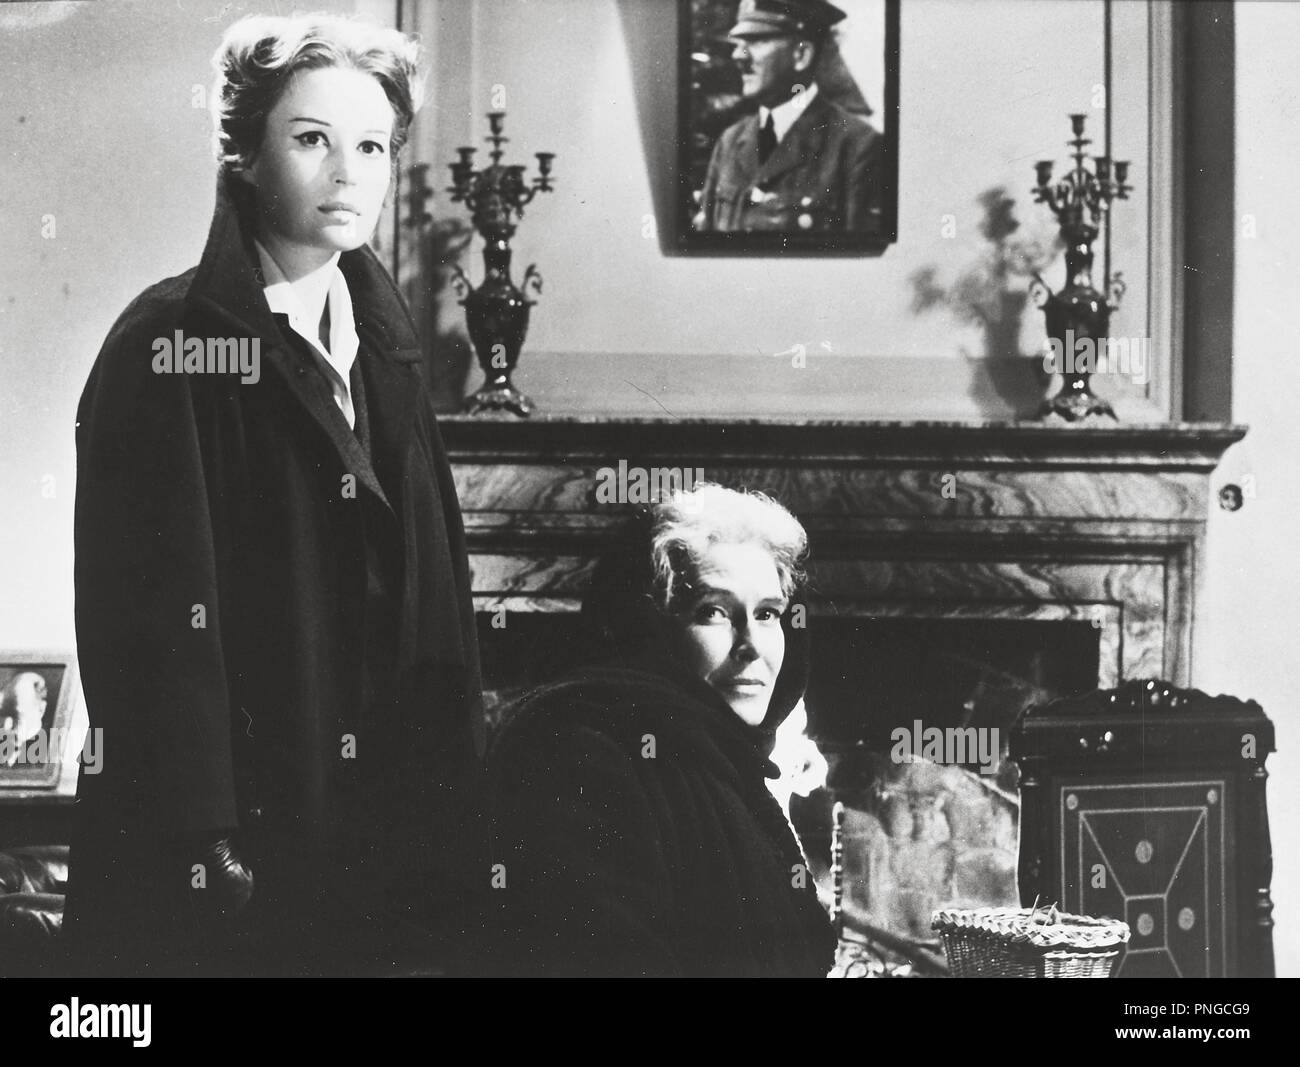 Il processo di Verona Anno: 1963 - Francia Italia Direttore: Carlo Lizzani  Silvana Mangano Foto stock - Alamy